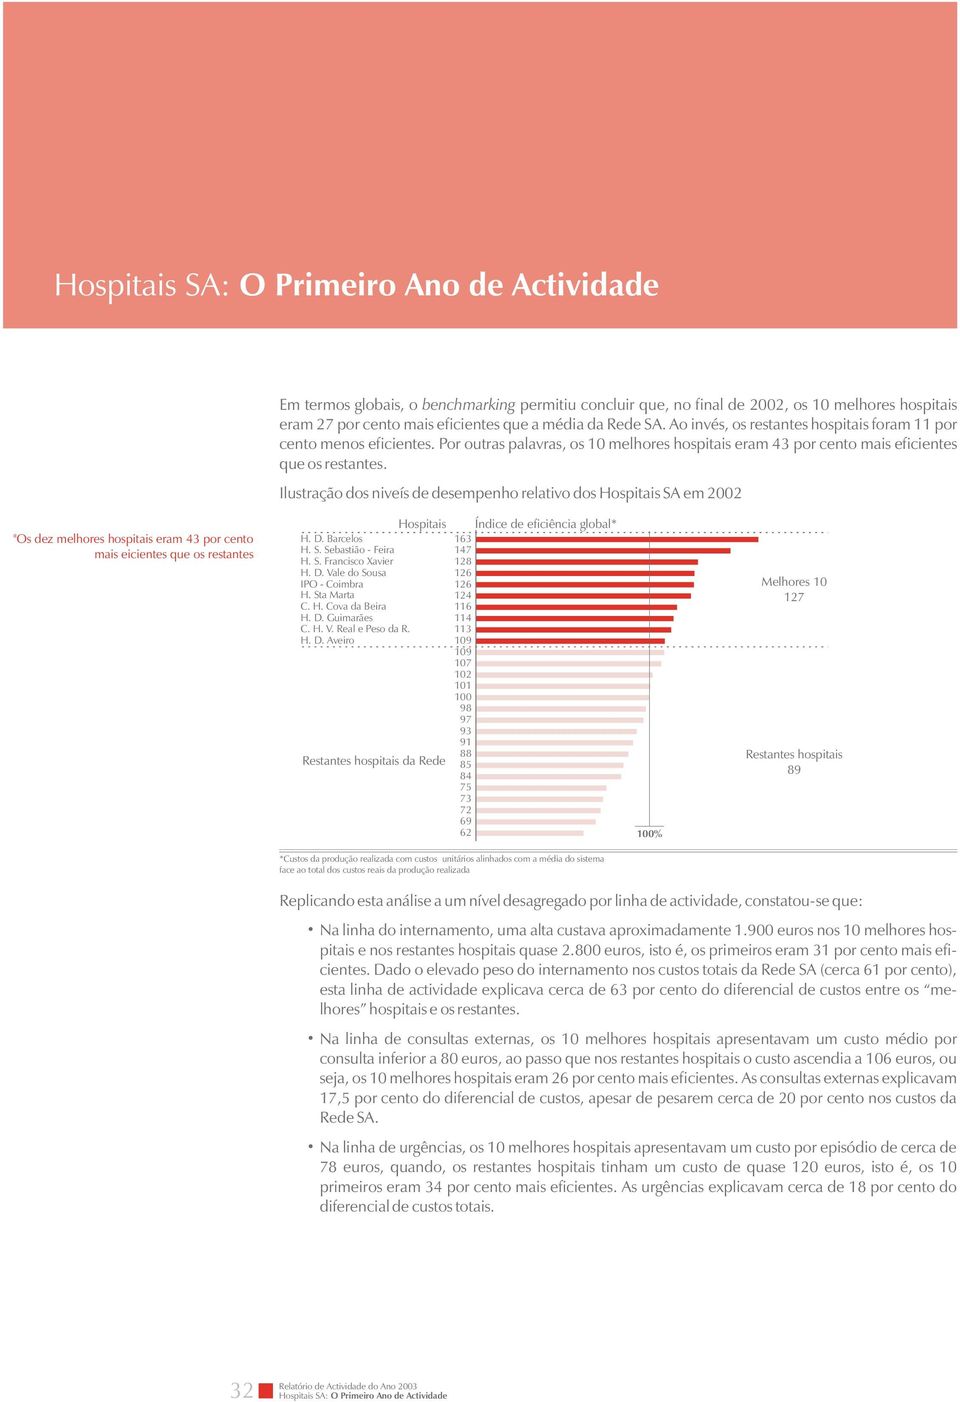 Ilustração dos niveís de desempenho relativo dos Hospitais SA em 2002 "Os dez melhores hospitais eram 43 por cento mais eicientes que os restantes Hospitais H. D. Barcelos H. S. Sebastião - Feira H.